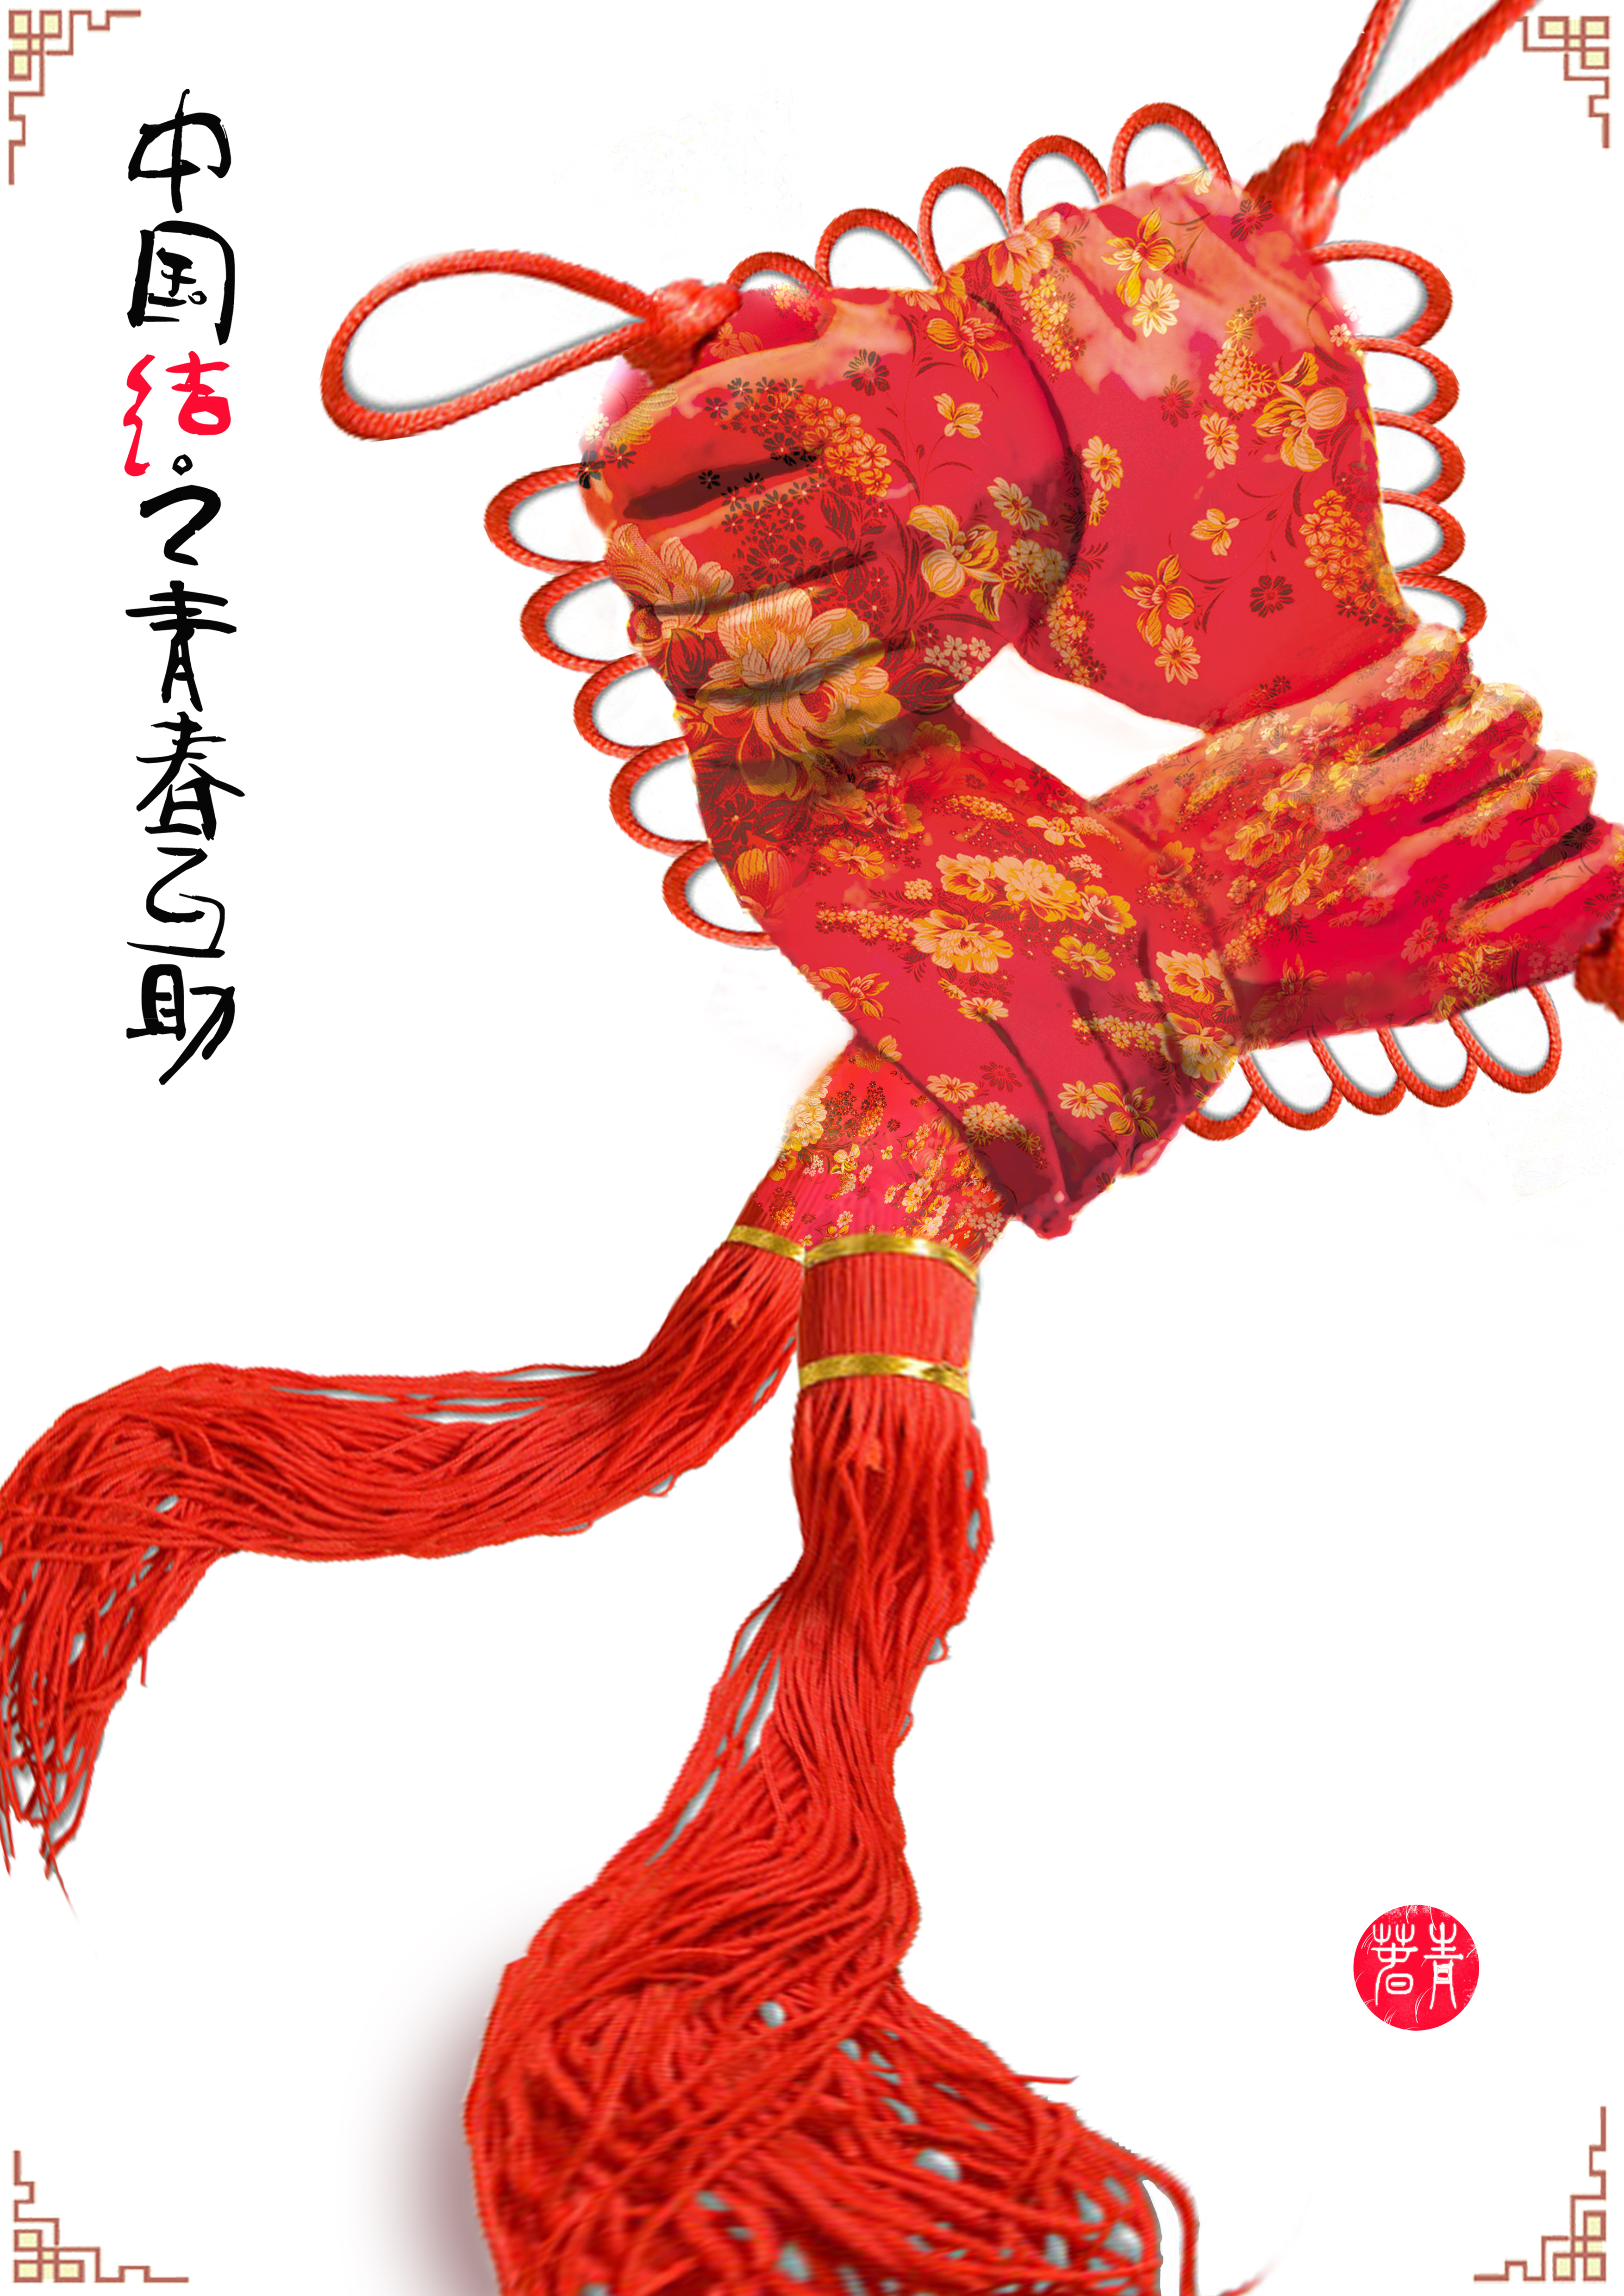 海报以由四只青年的手相握互助组成具有中国传统文化的中国结,四只手